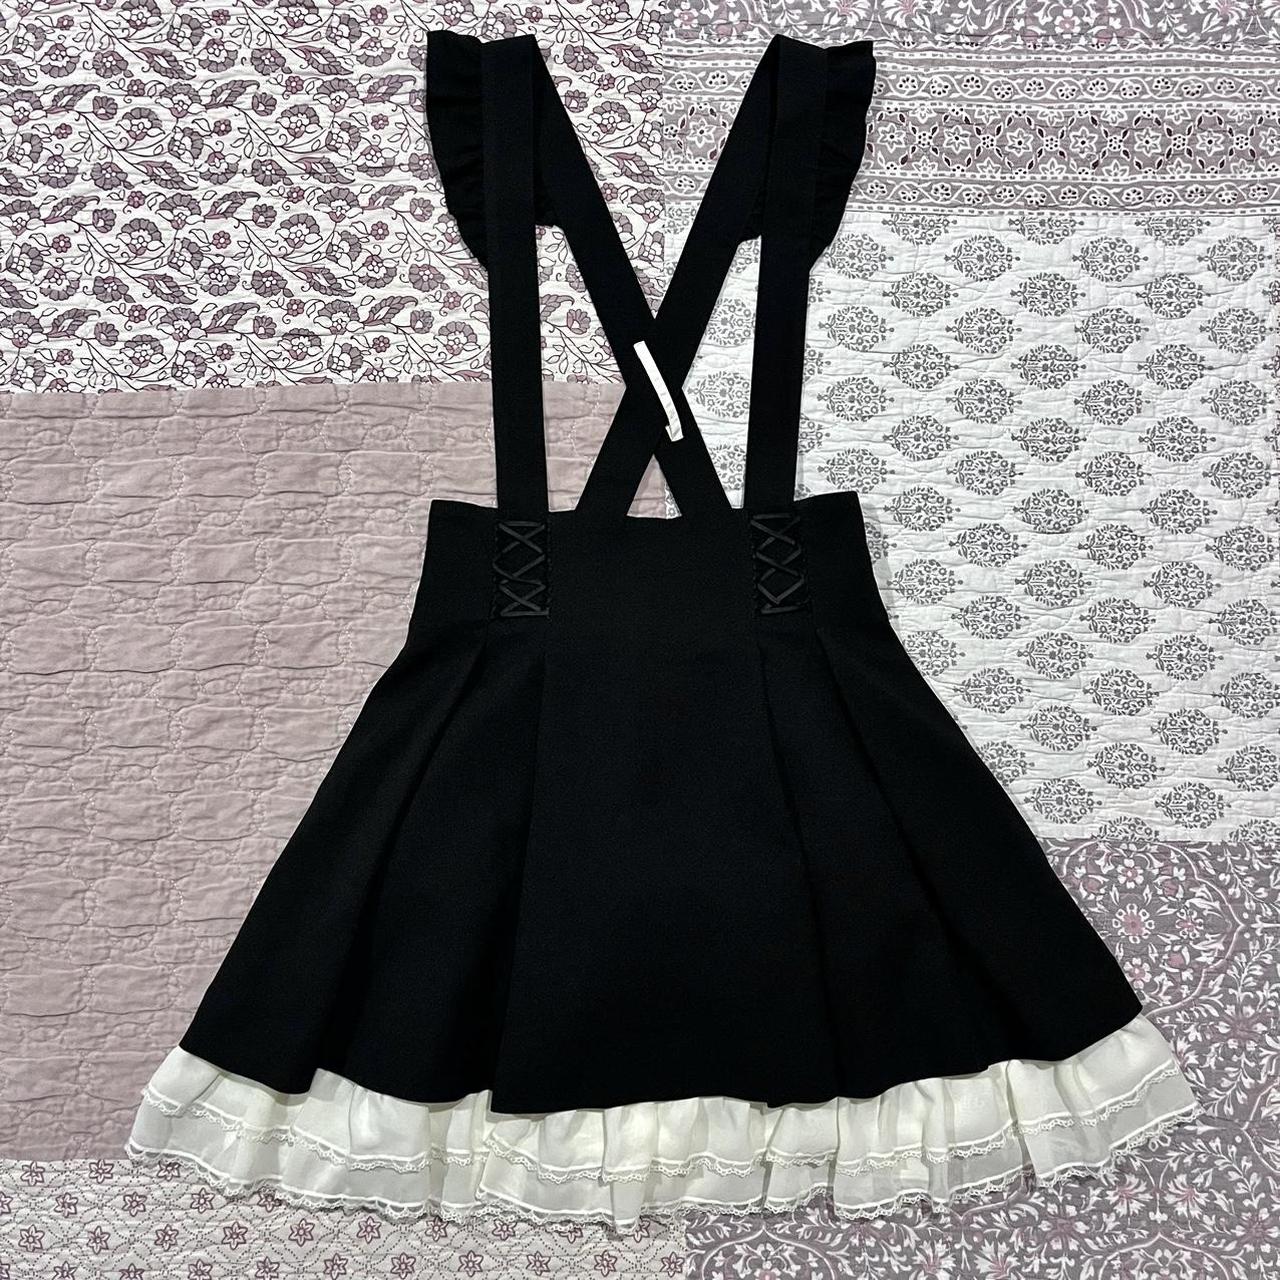 Secret Honey Lace Up Suspender Skirt •⁑• removable... - Depop